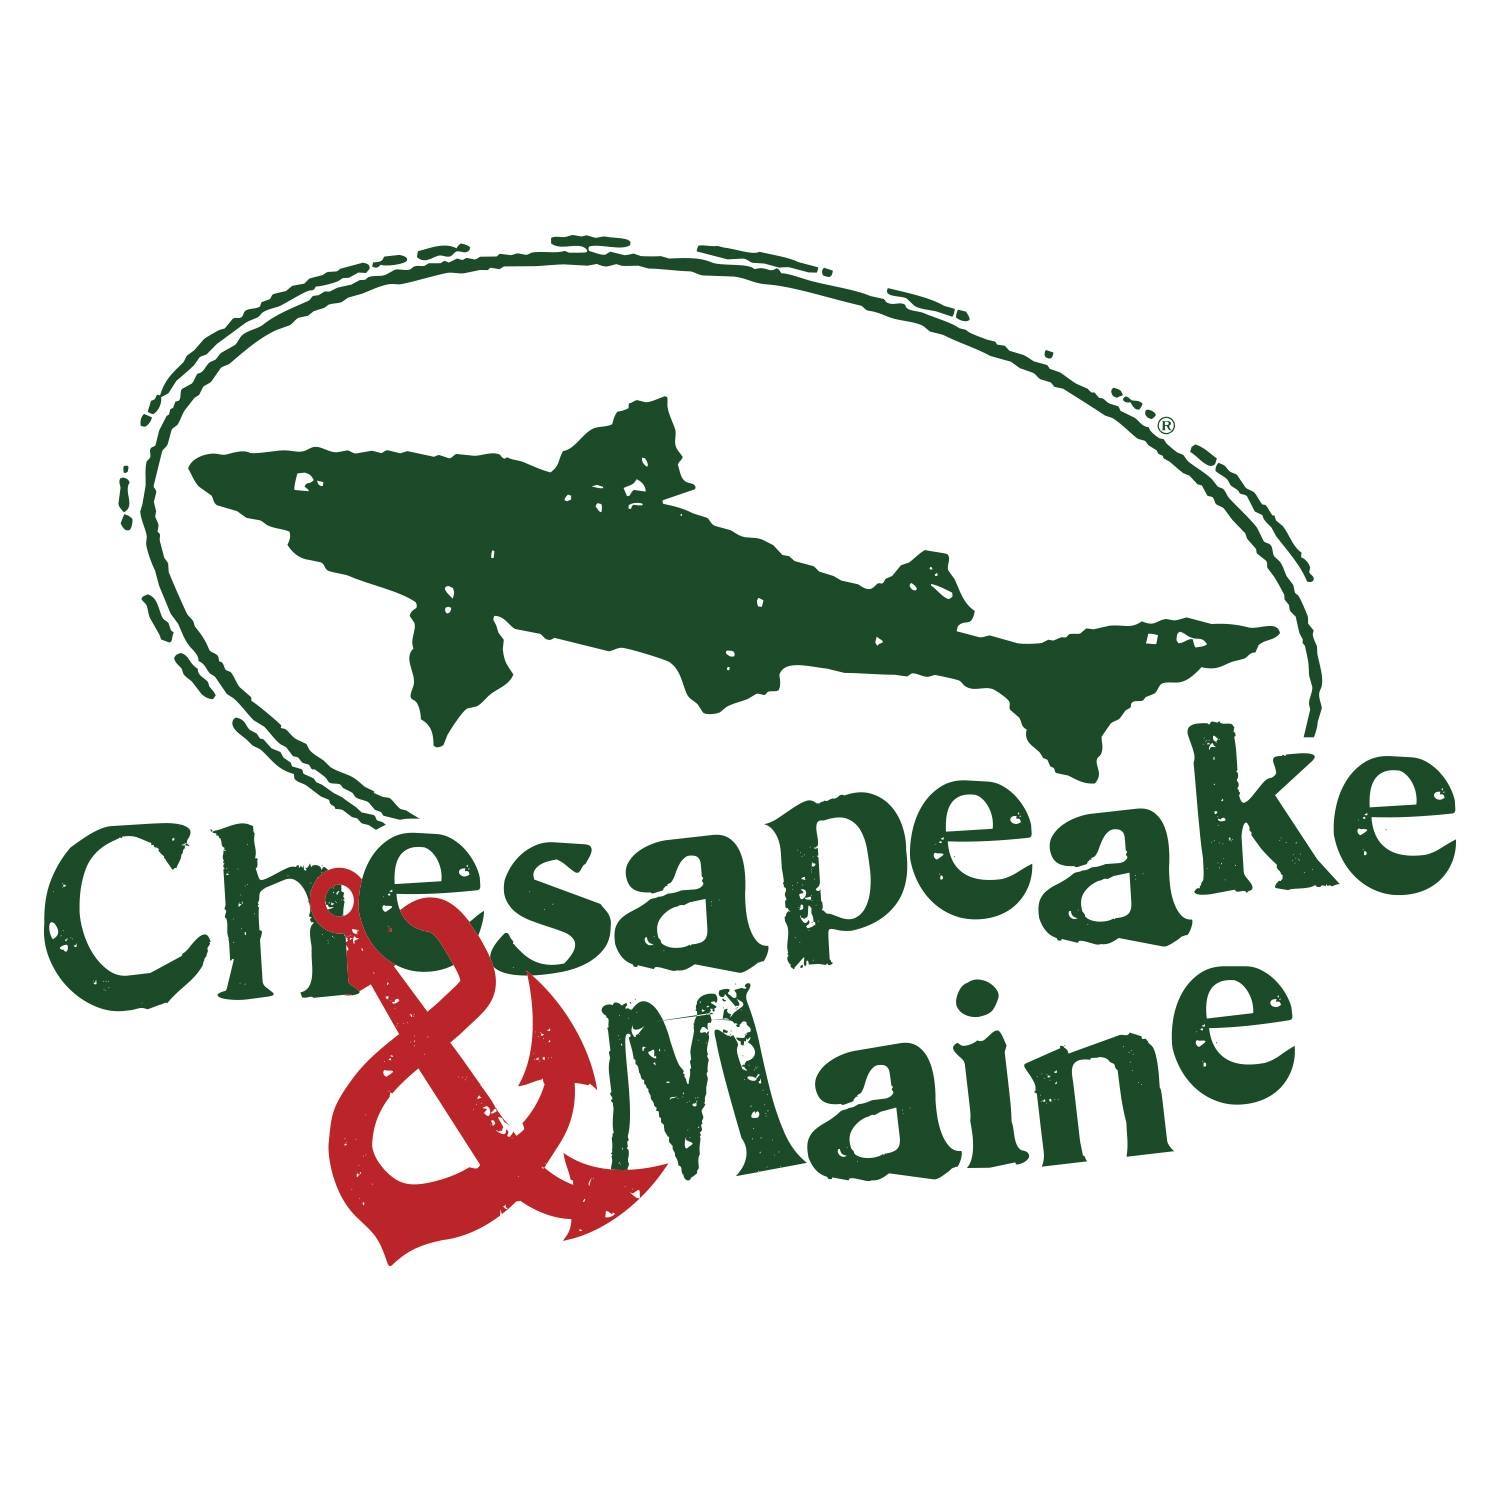 Chesapeake & Maine